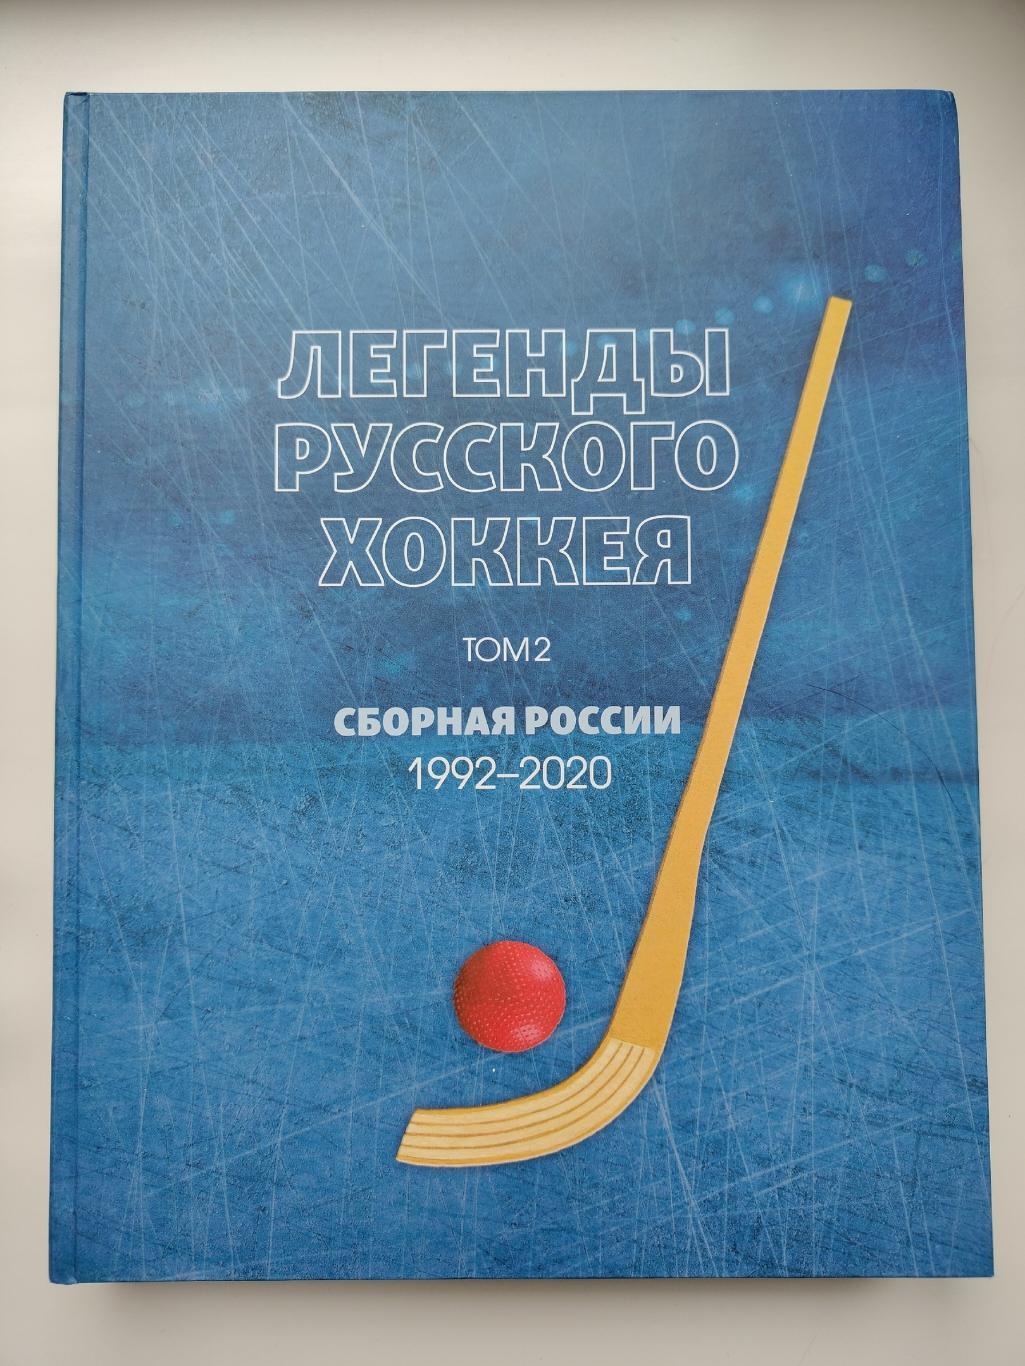 Хоккей с мячом. Легенды русского хоккея 2 том Сборная России 1992-2020